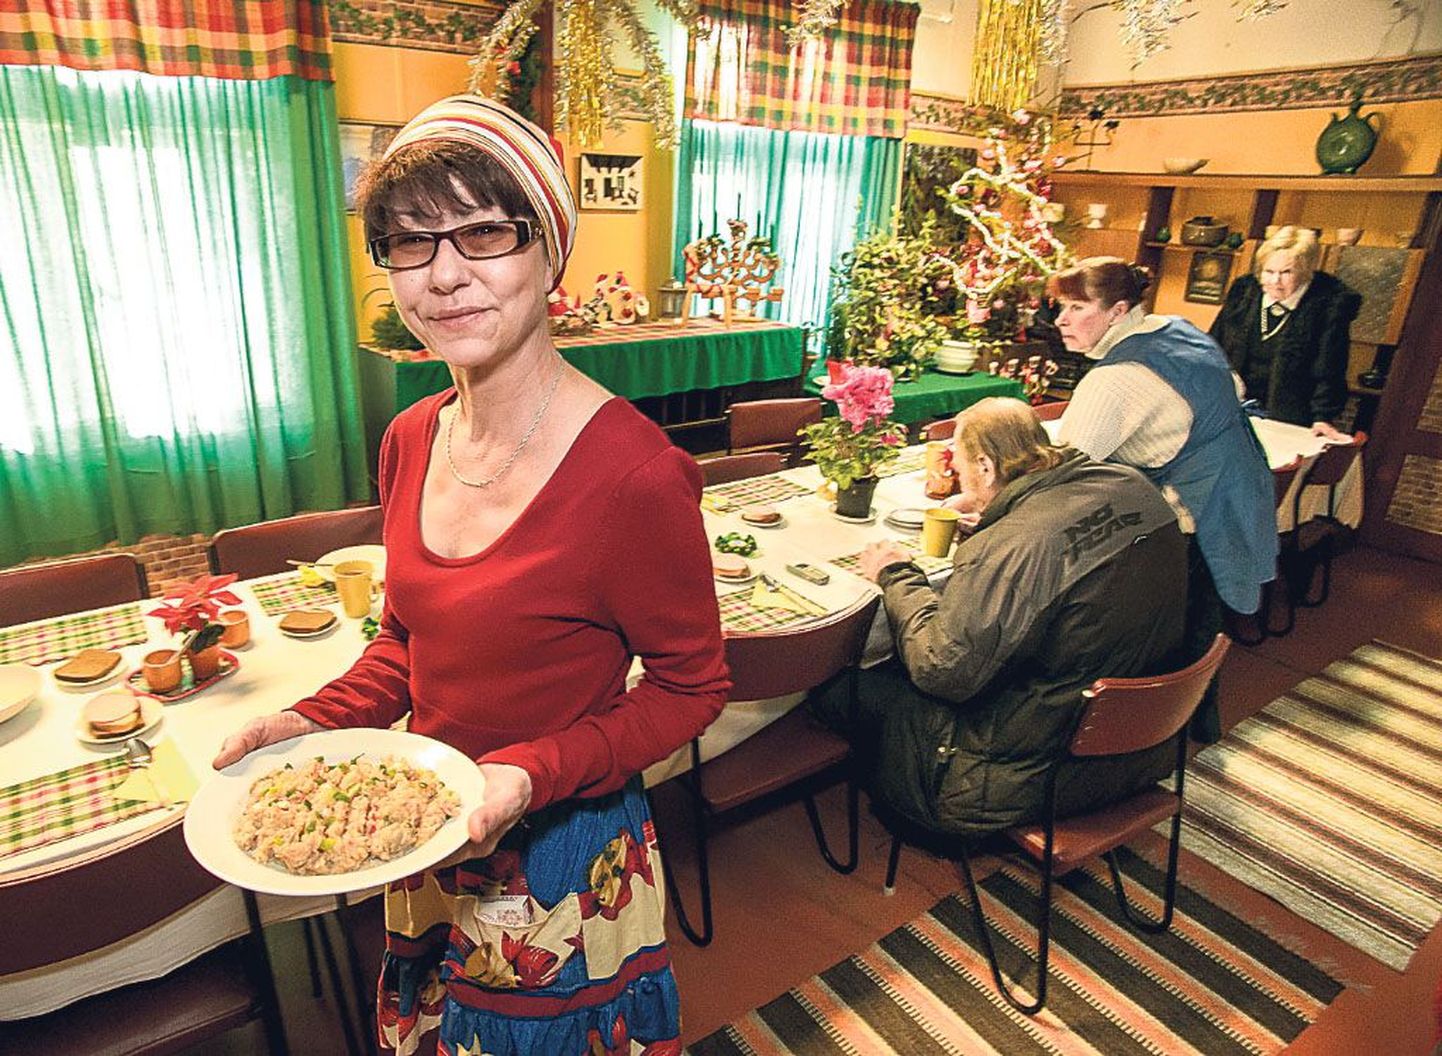 MTÜ Ärkamise söögimaja Raissa Juures koka Irina Pokidajeva tehtud toite sööjad kiidavad. Söögimaja juhataja sõnul teeb ta süüa vastutustundega.